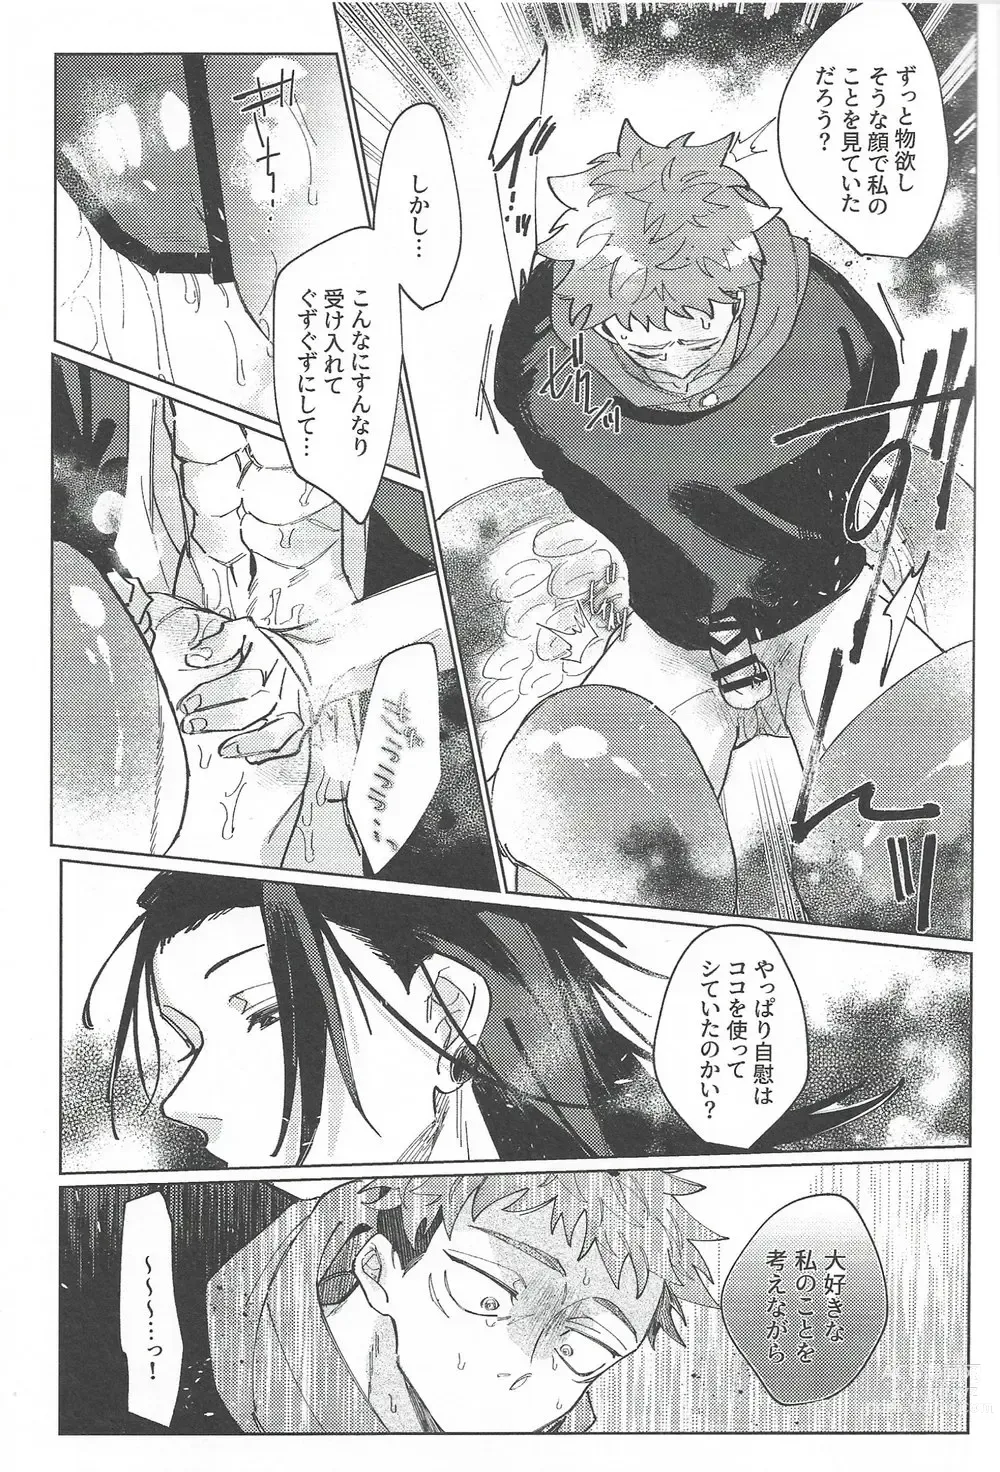 Page 64 of doujinshi Rakuen no Niwa